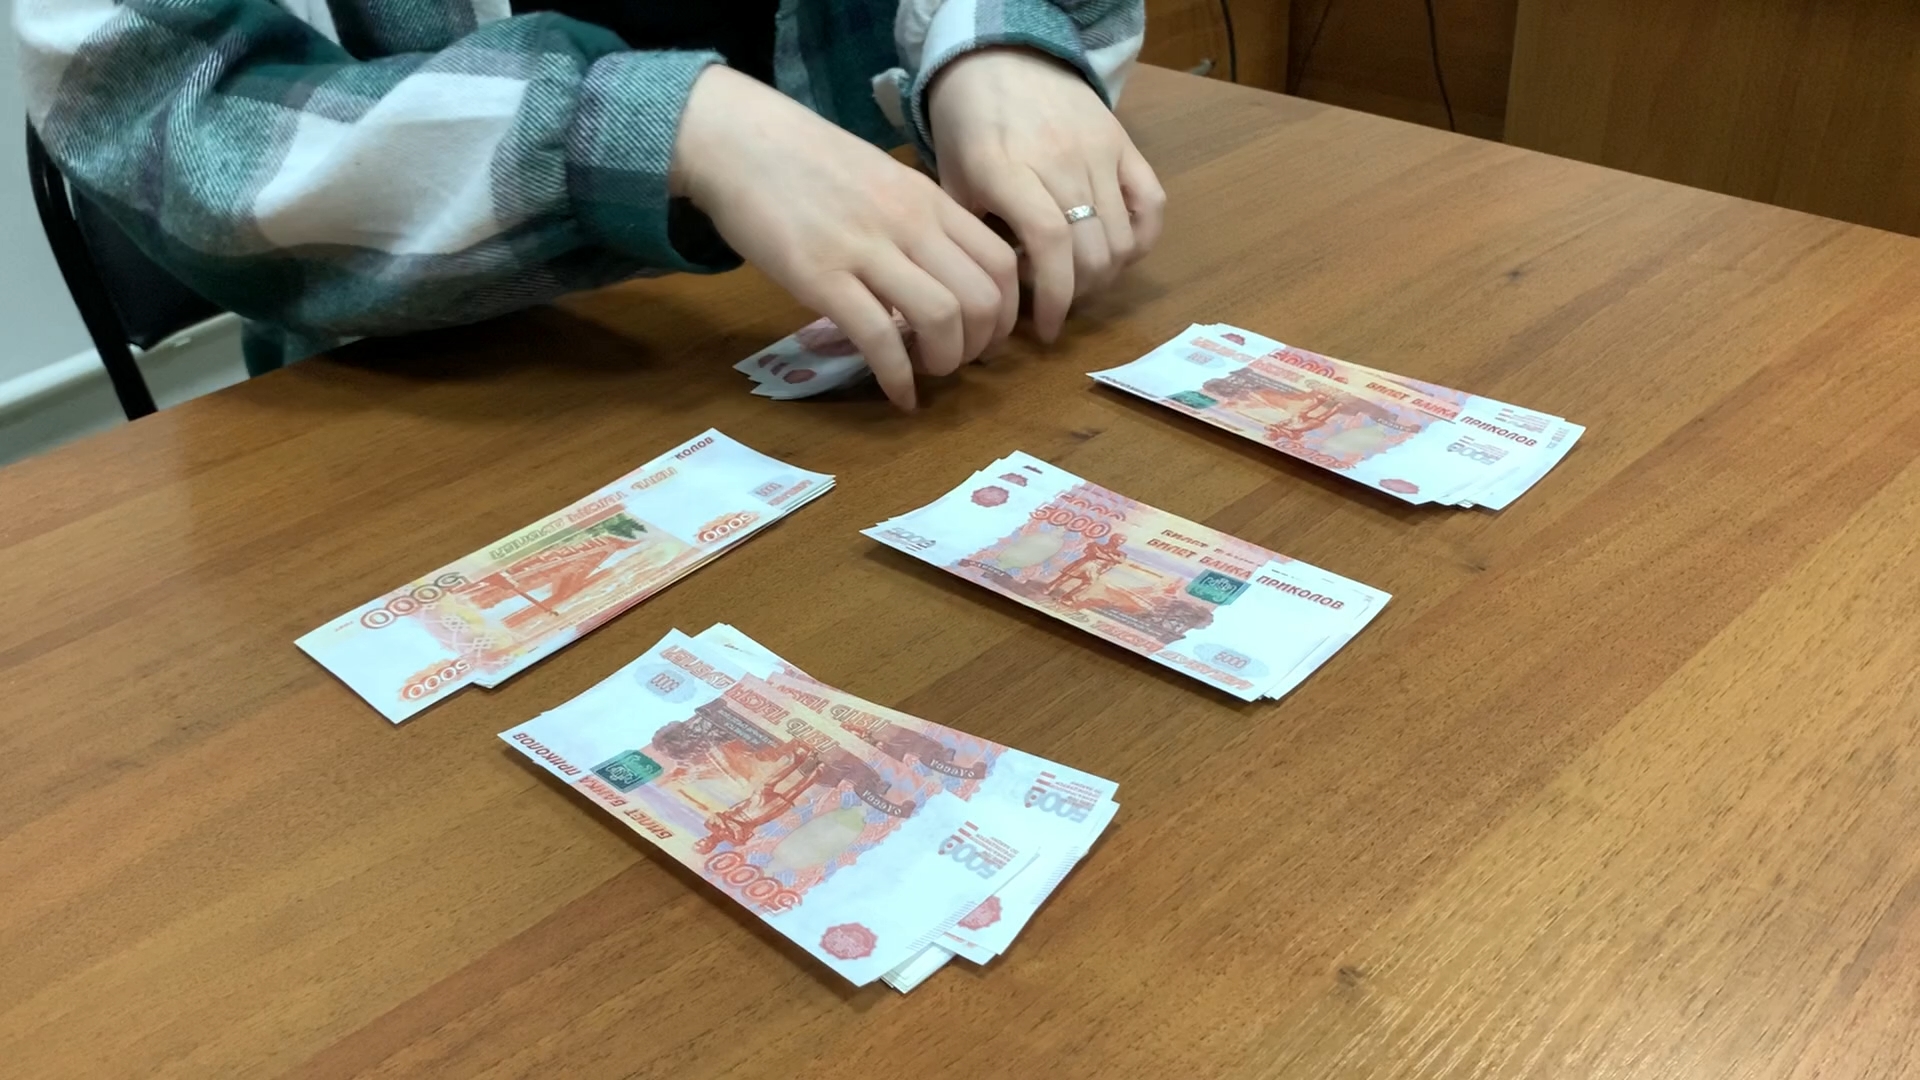 Восьмилетний мальчик перевел мошенникам почти 400 тысяч рублей. 159.4 мошенничество